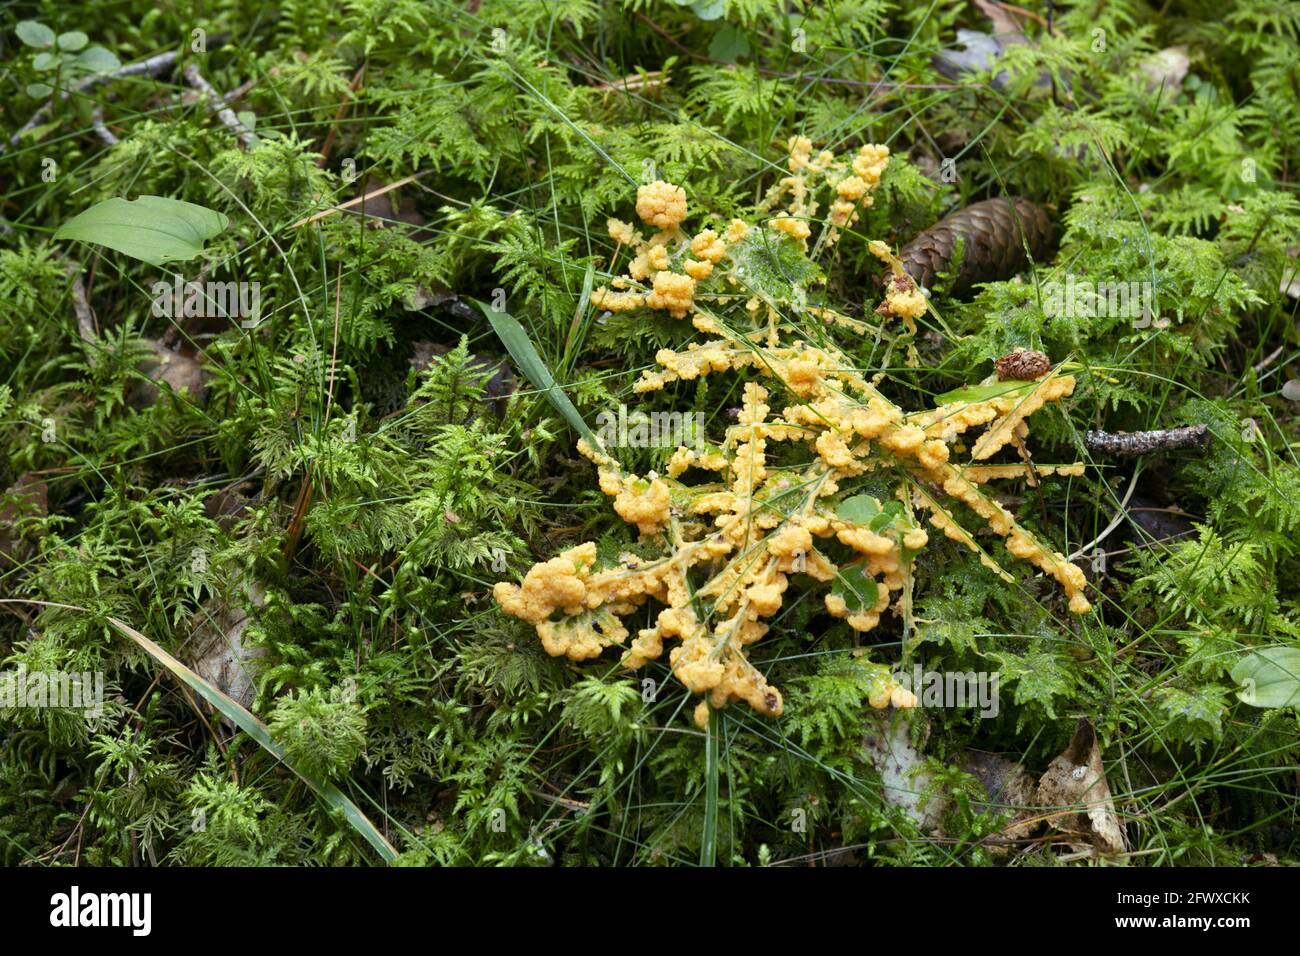 Slime mold, Fuligo muscorum growing among moss Stock Photo